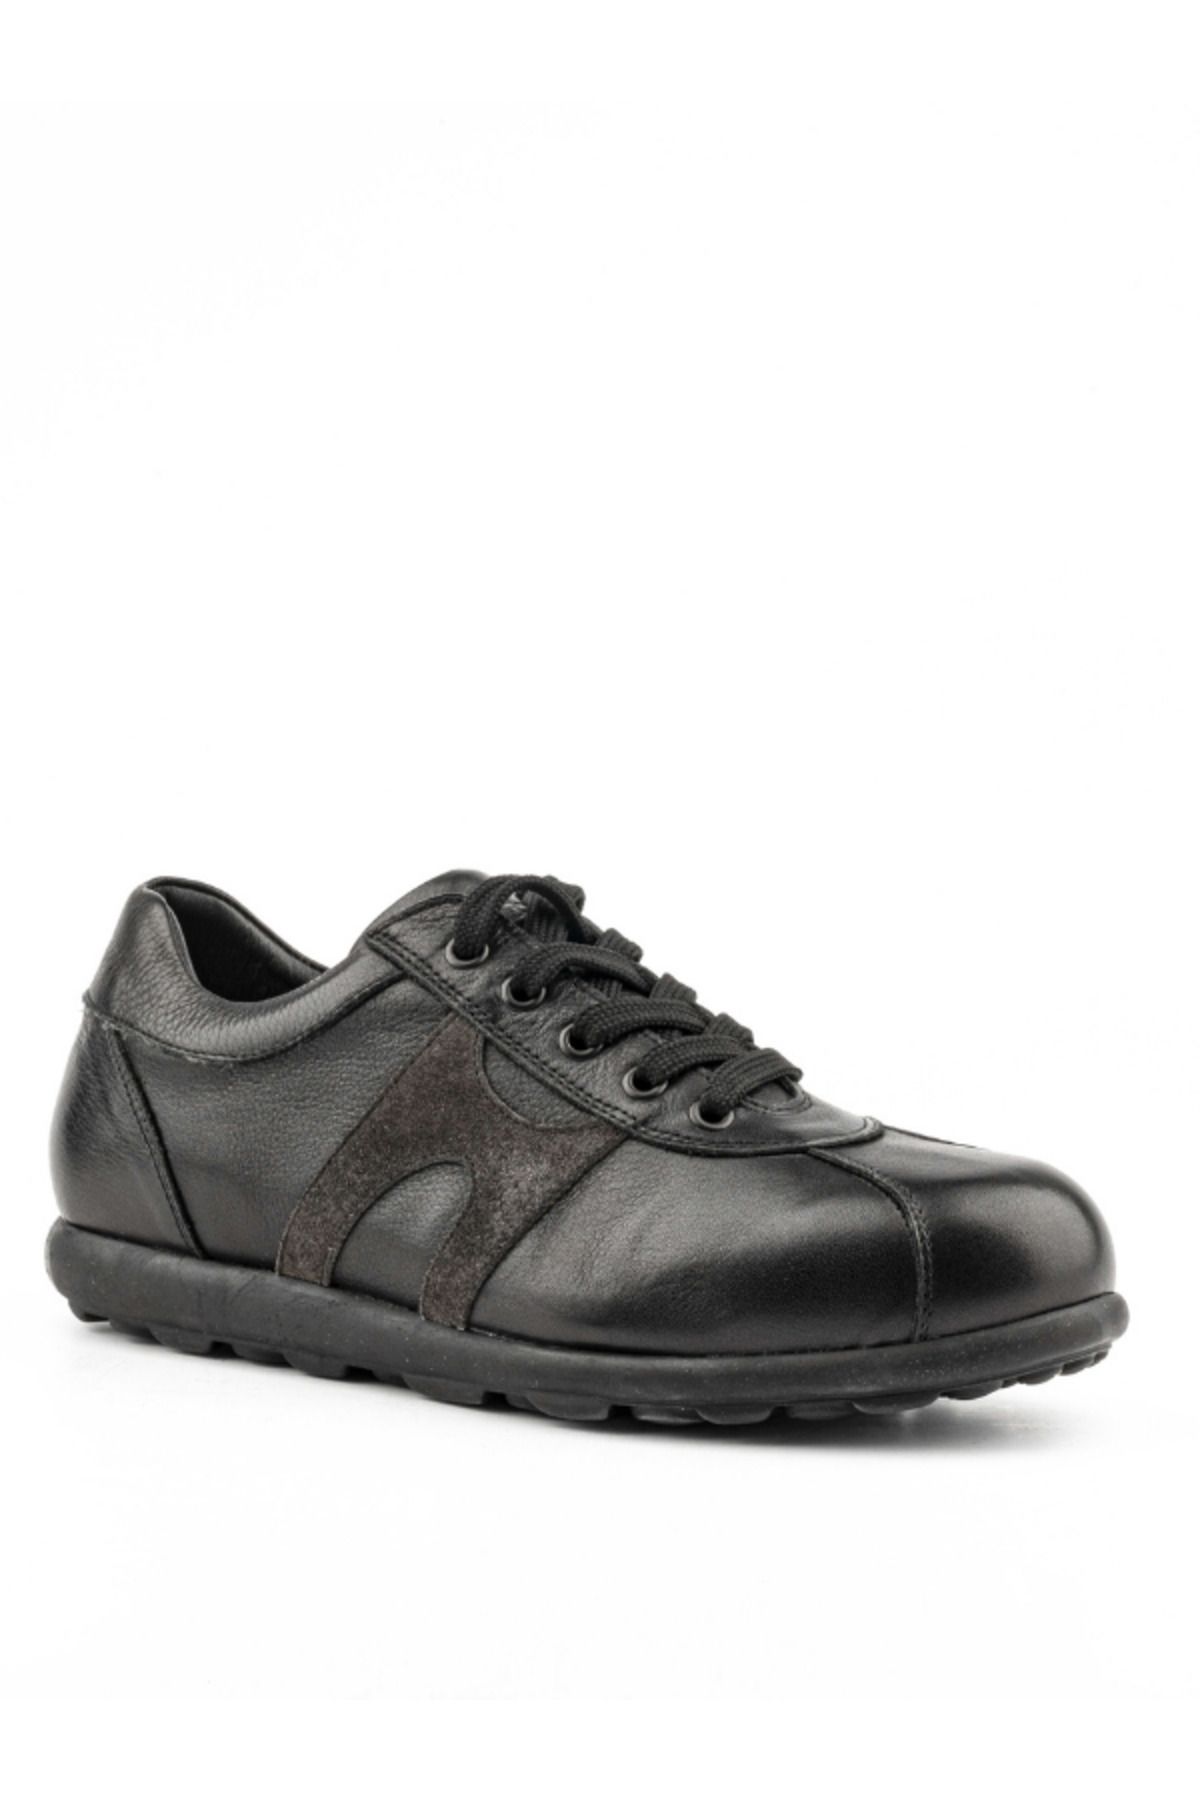 Riccardo Colli Hakiki Deri Konforlu Günlük Ayakkabı Özel Tasarım Konfor Taban Casual Siyah Ayakkabı